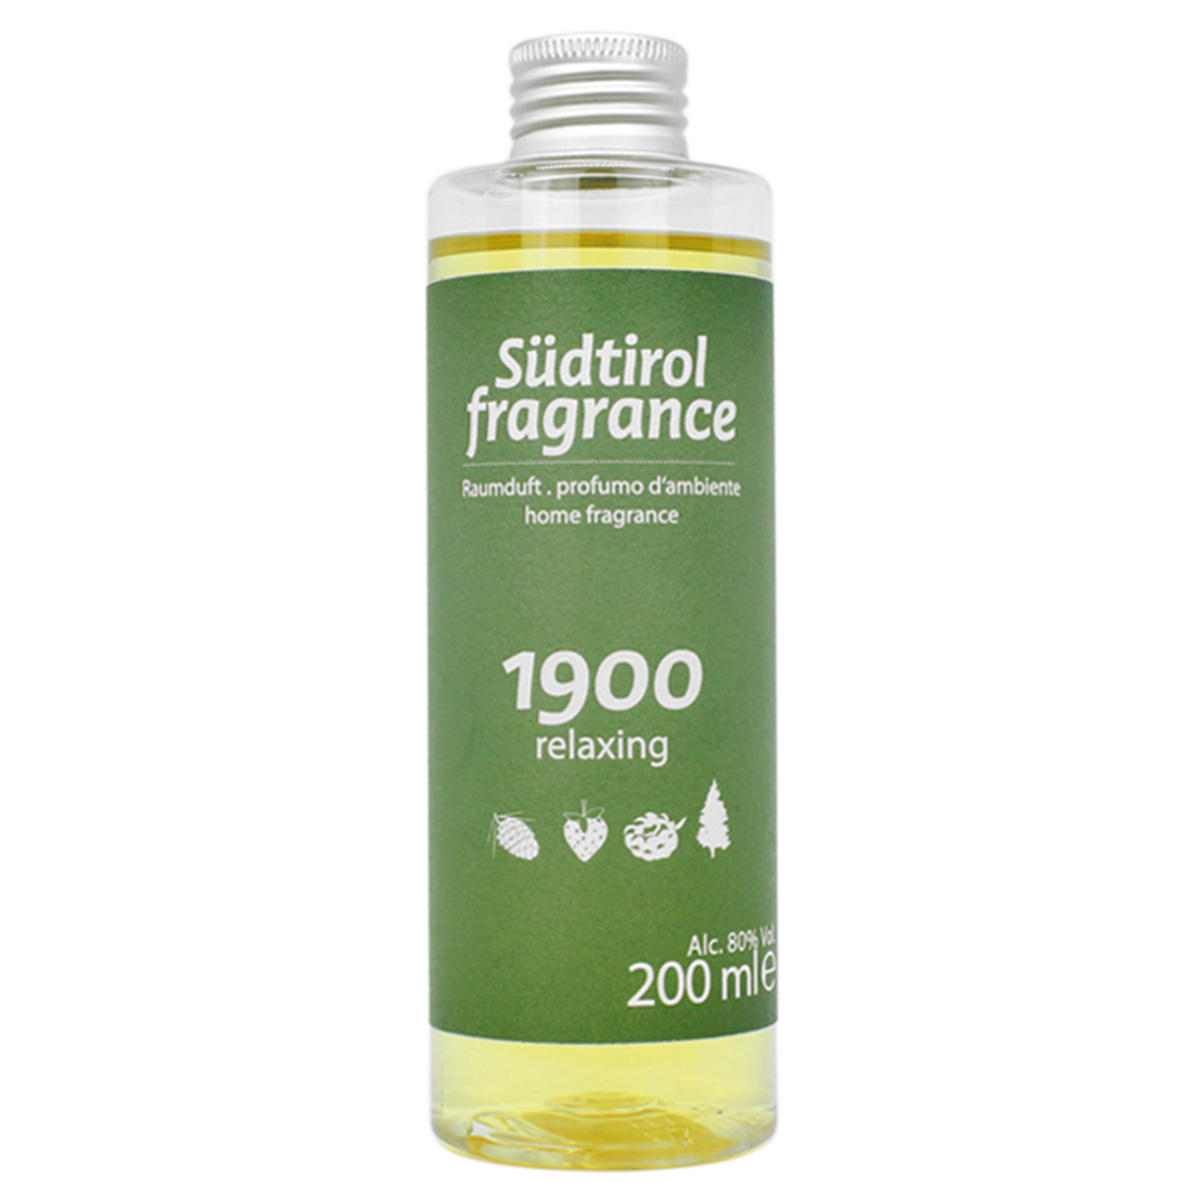 TEAM DR JOSEPH South Tyrol Fragrance 1900 room fragrance refill bottle  - 1